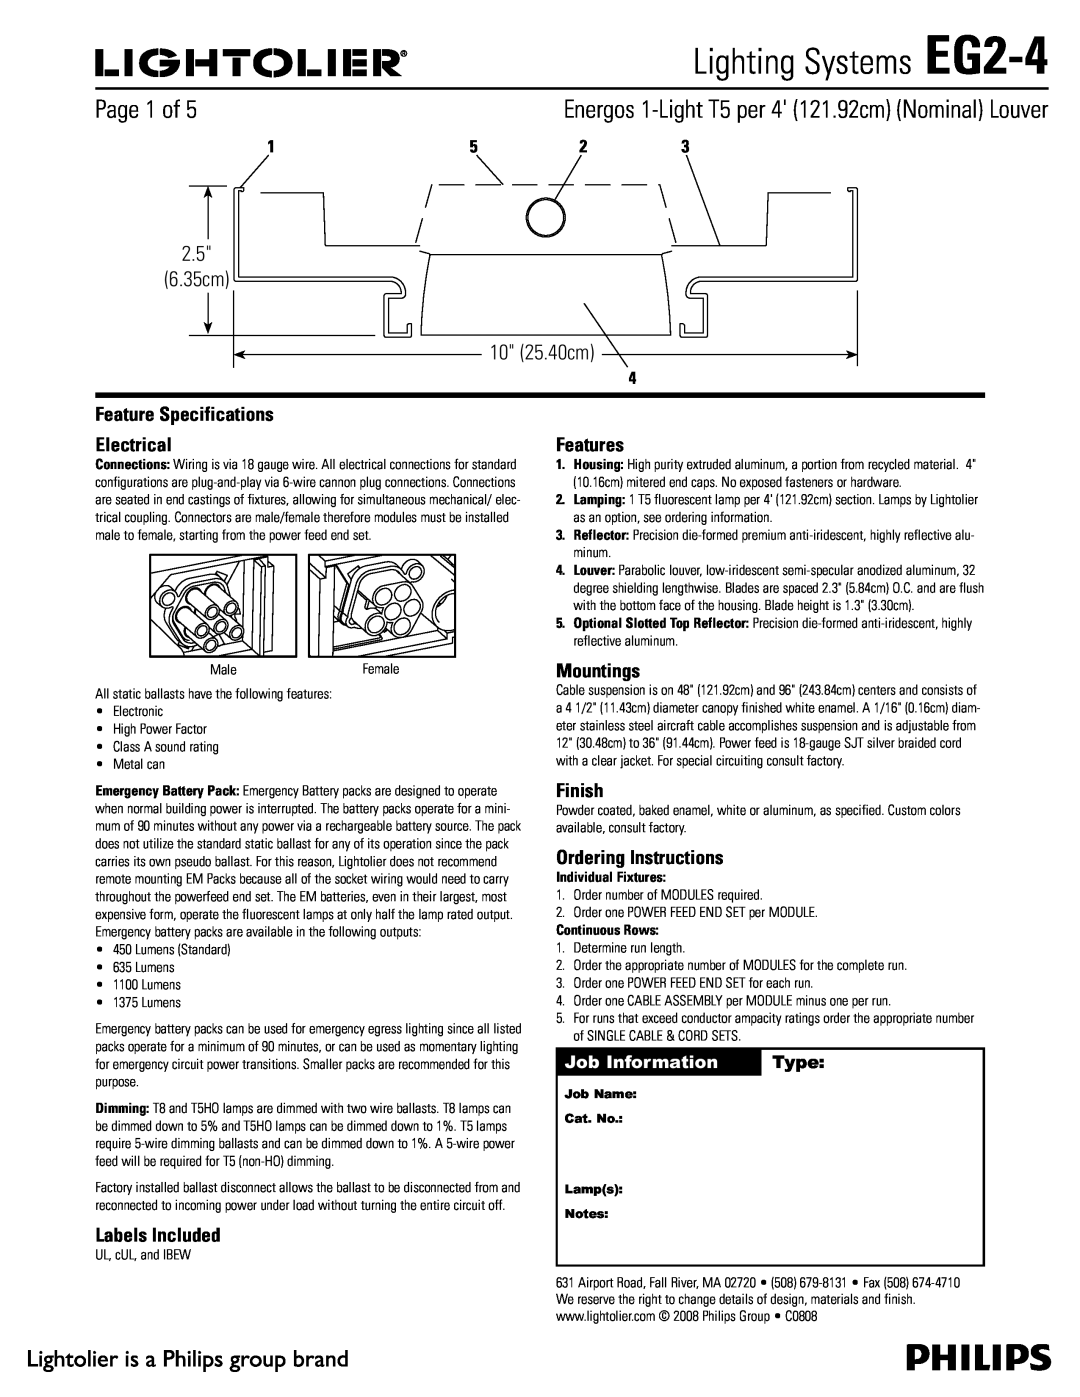 Lightolier specifications Lighting Systems EG2-4,  Dn  Dn, Job Information, Type 